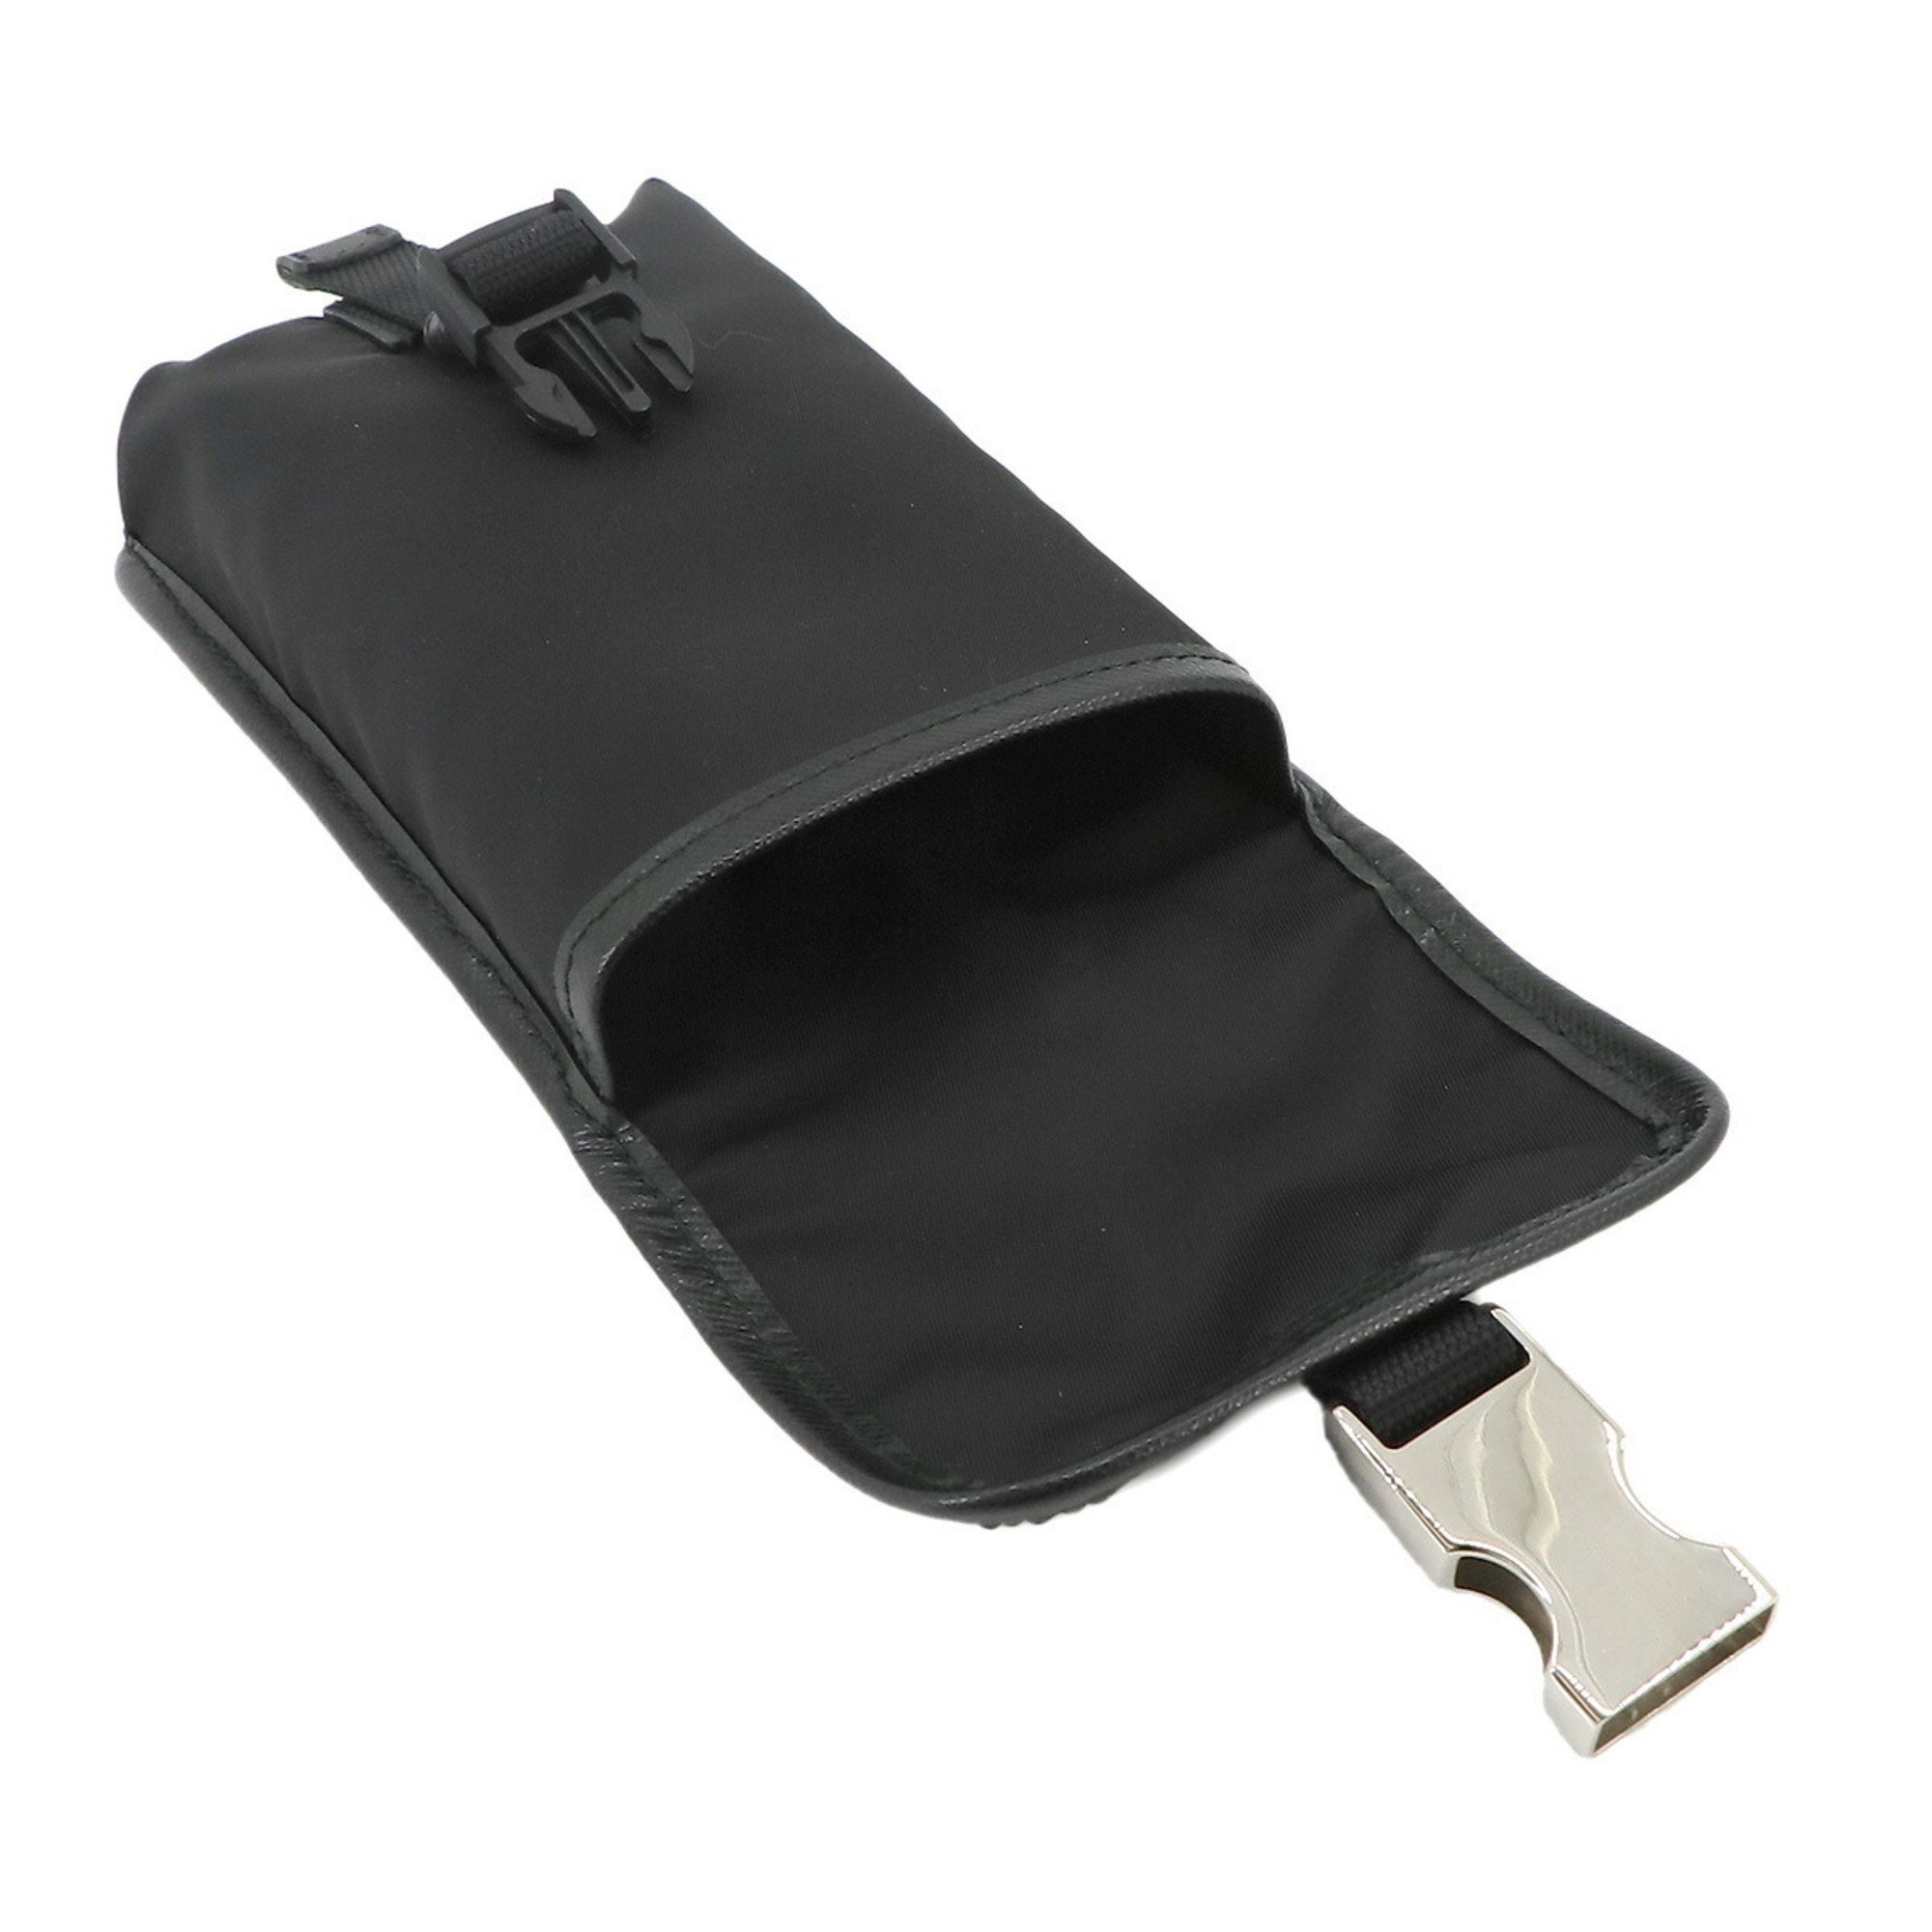 PRADA pouch nylon saffiano leather black silver hardware Mini Pouch